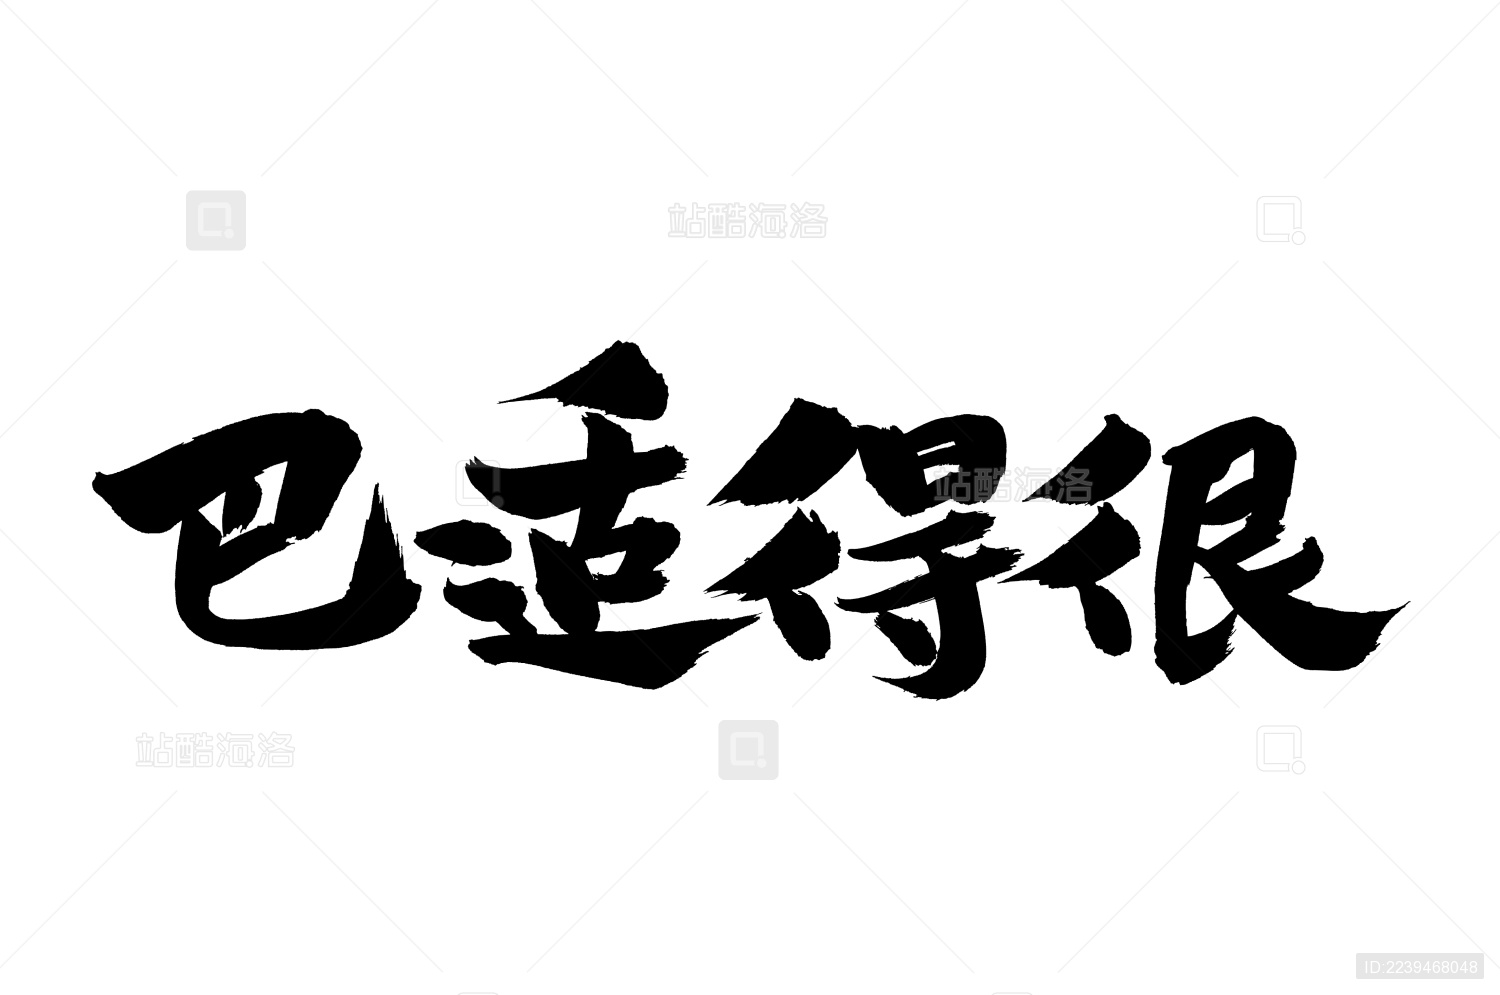 中国人只看字体能分辨出外国人写的字吗？｜欧巴Studio_哔哩哔哩_bilibili